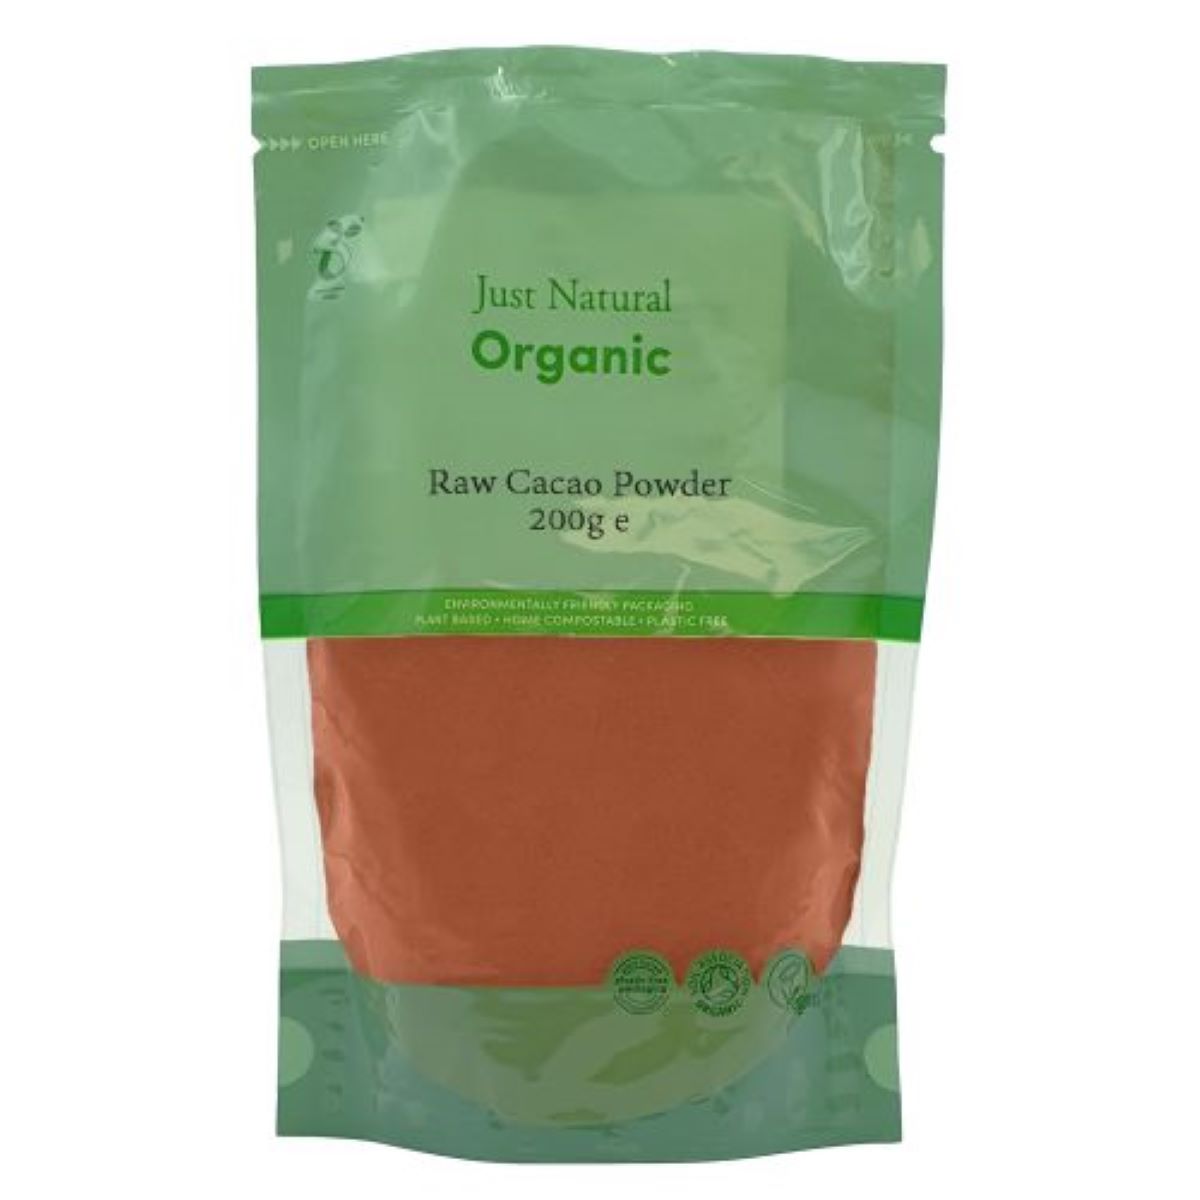 Just Natural Organic Raw Cacao Powder 200g